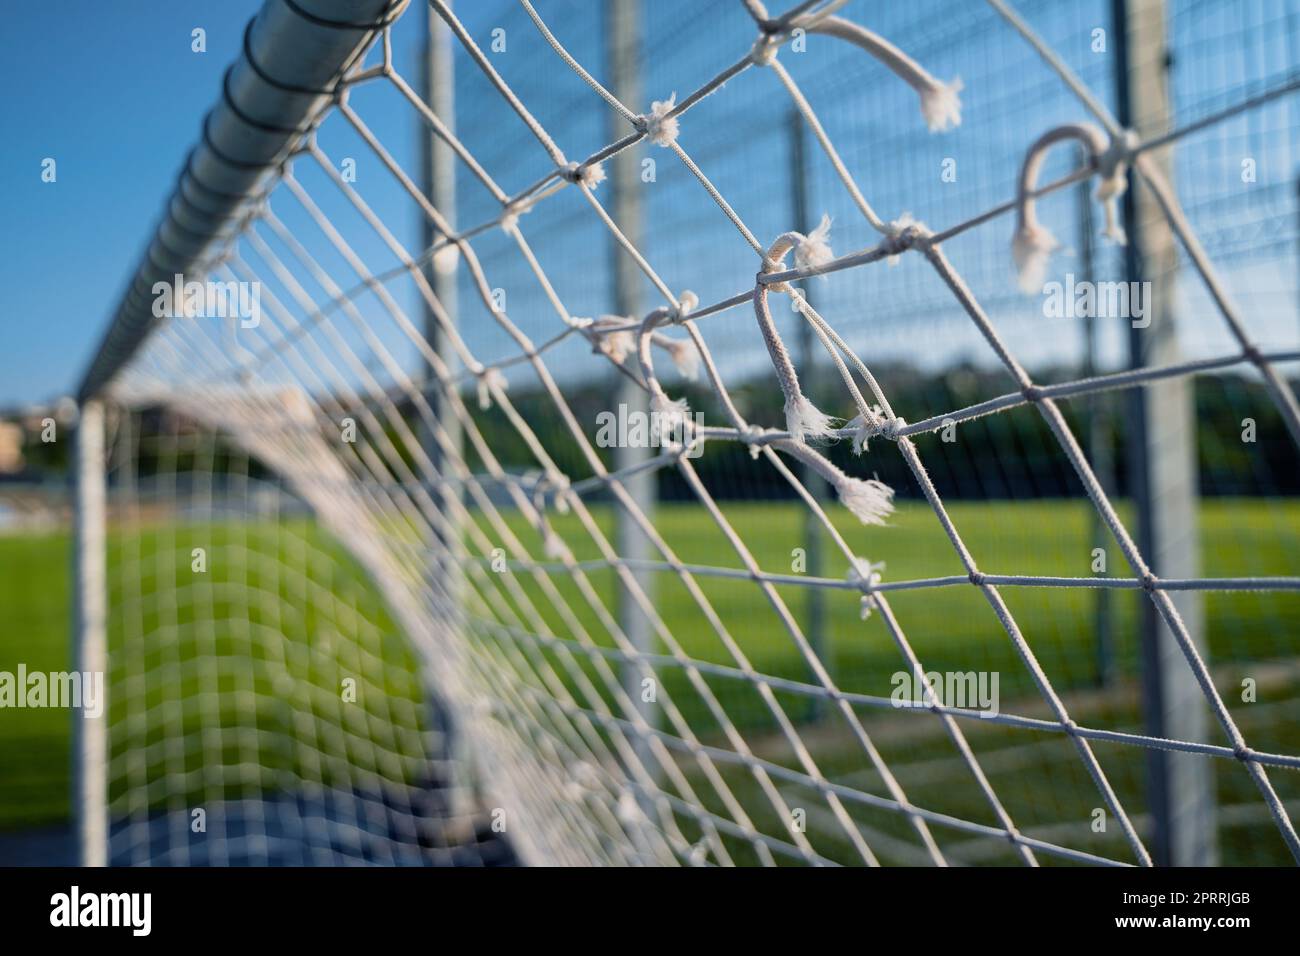 gros plan de la grille de football porte goalpost filet de corde blanc avec champ vert en arrière-plan Banque D'Images